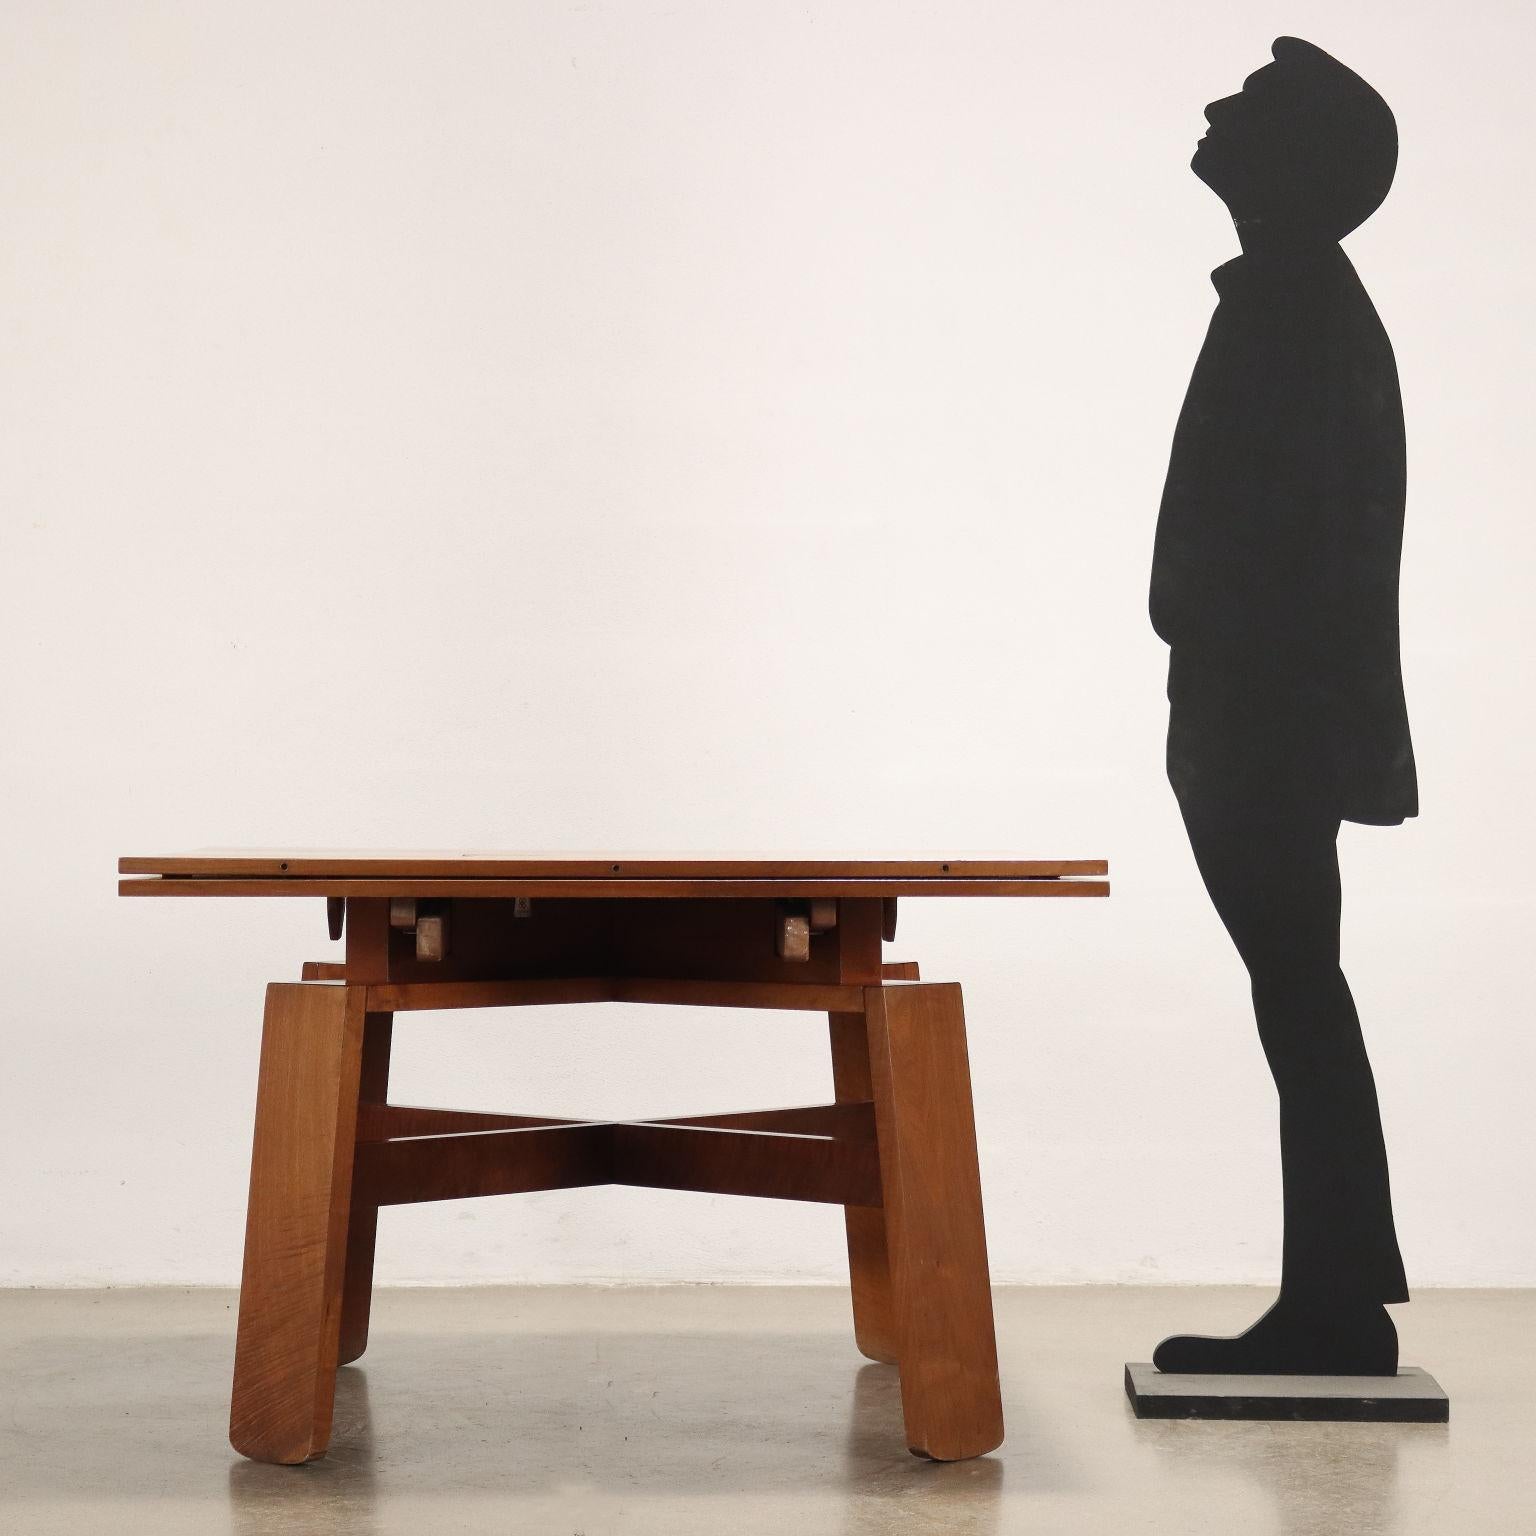 Tavolo allungabile in legno impiallacciato noce, completo di ceramiche originali; Silvio Coppola progetta negli anni 60 per Bernini questa linea di mobili che riprendono il tema del mobile 'popolare. Buone condizioni